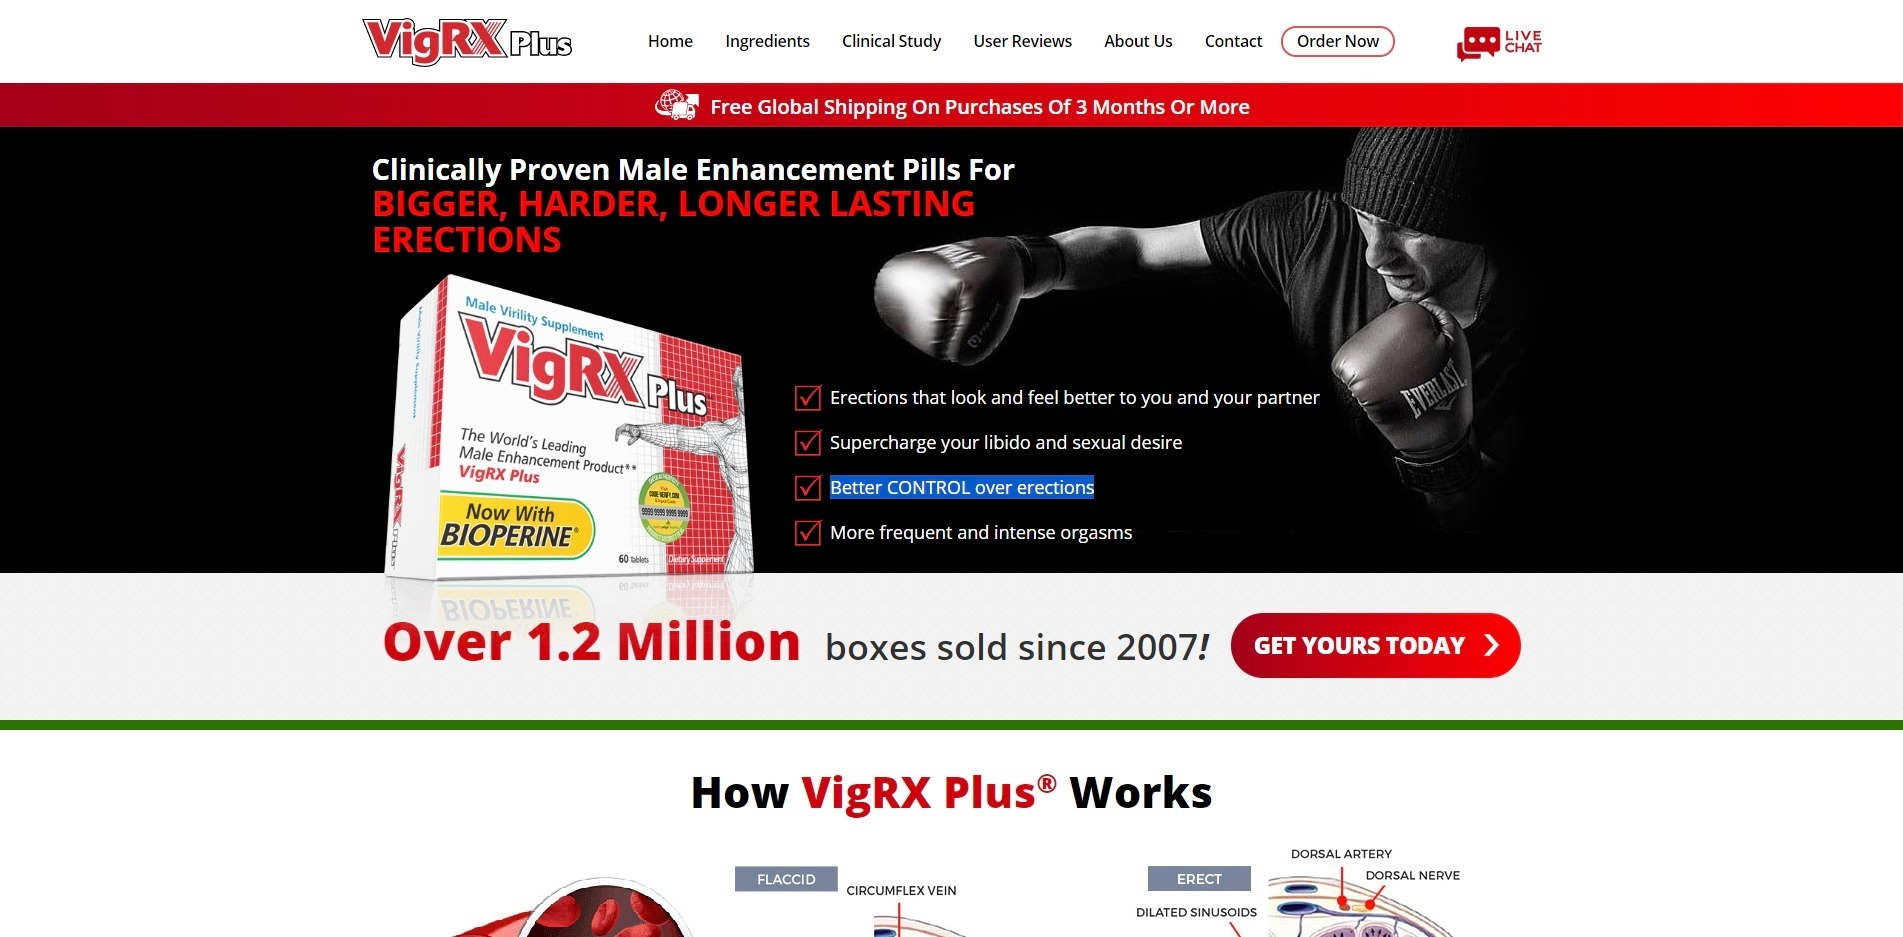 VigRX Plus Erectile Dysfunction Pills